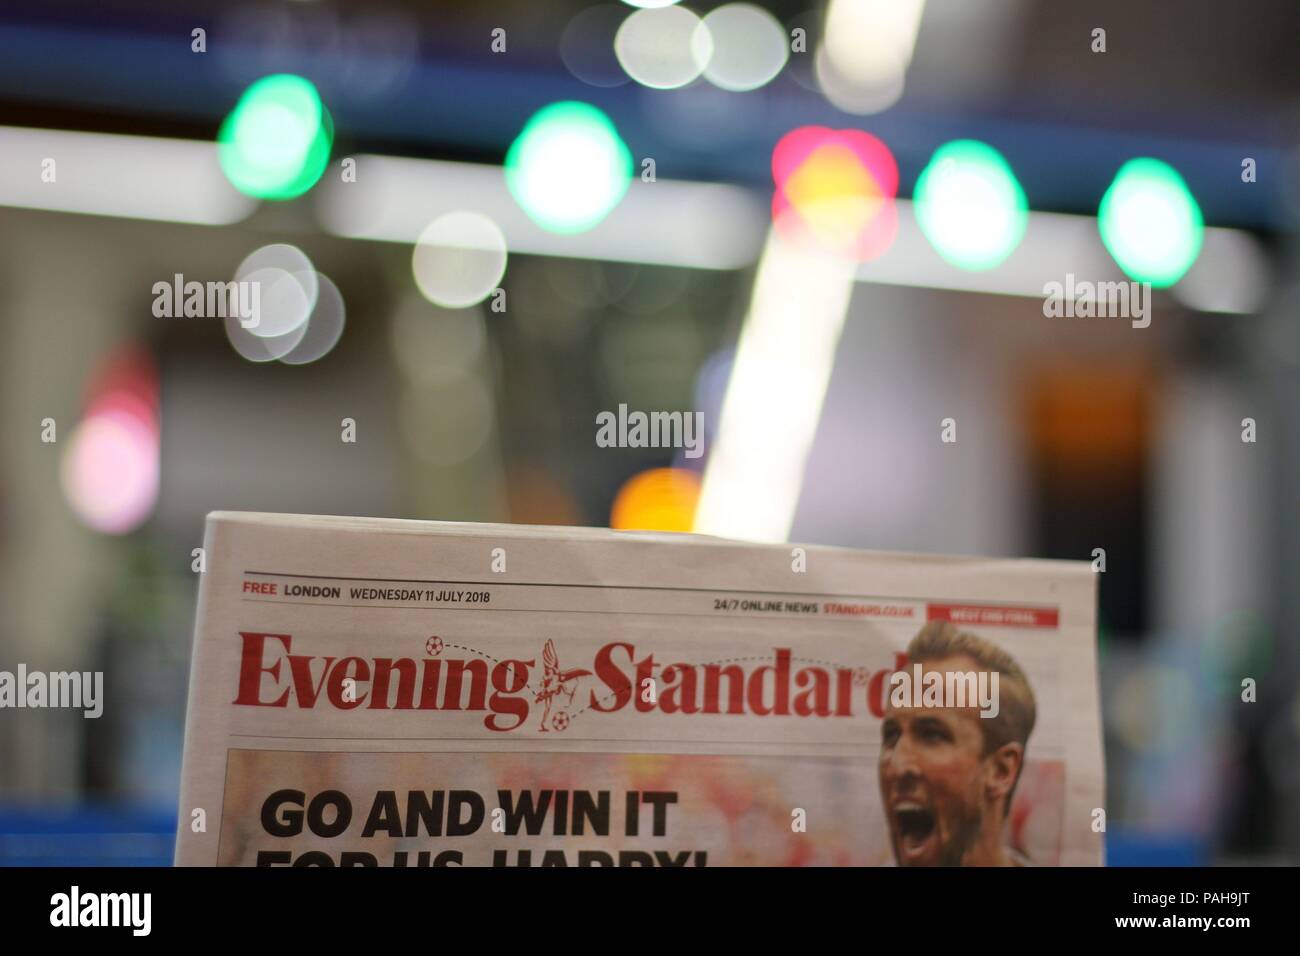 Primera página del periódico, London Evening Standard, mostrando noticias sobre la Copa Mundial Inglaterra 2018 Foto de stock